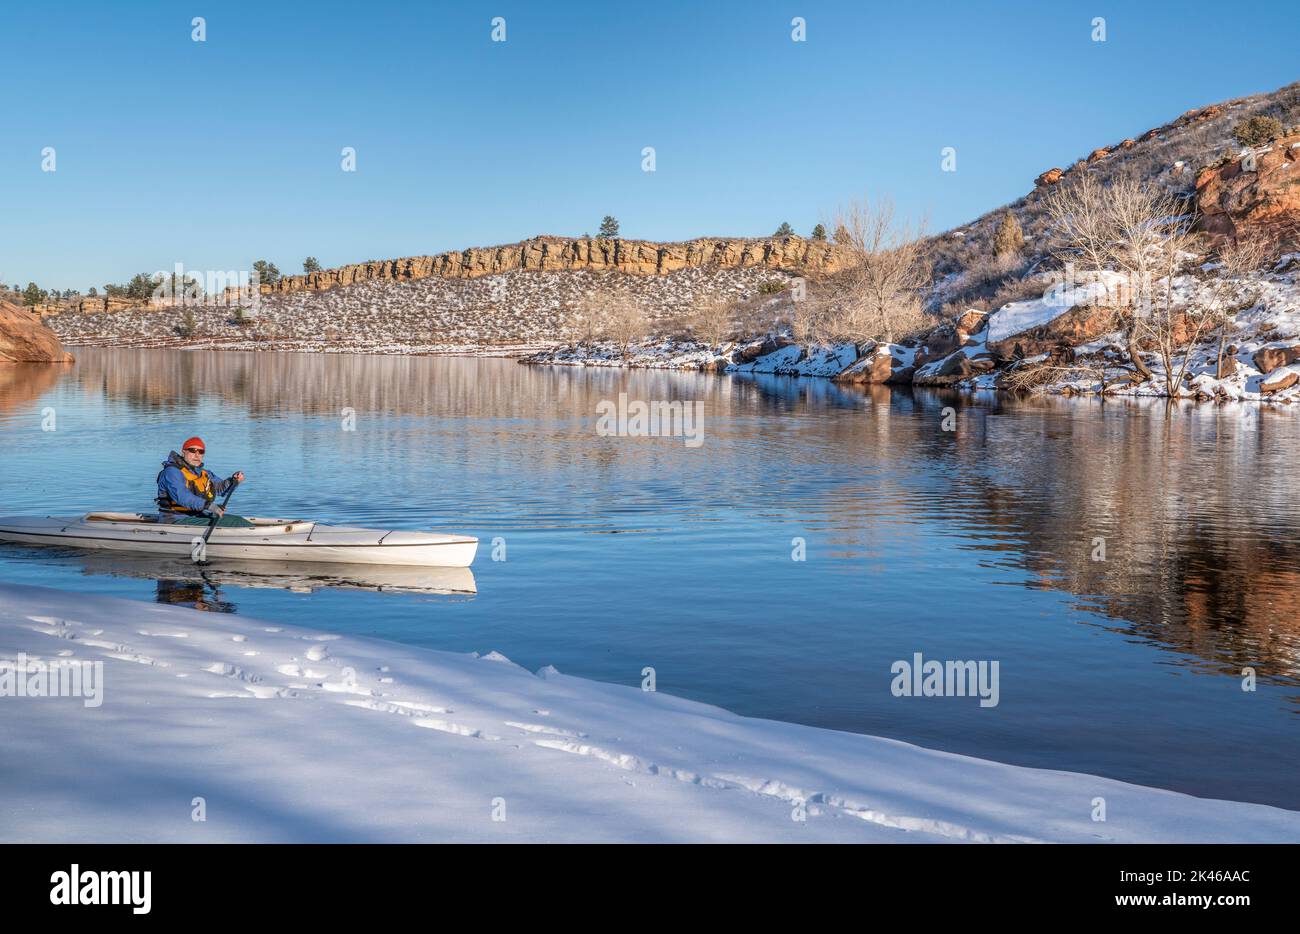 Un homme âgé portant un gilet de sauvetage pagayer une expédition en canoë dans le paysage hivernal du réservoir Horsetoth dans le nord du Colorado Banque D'Images